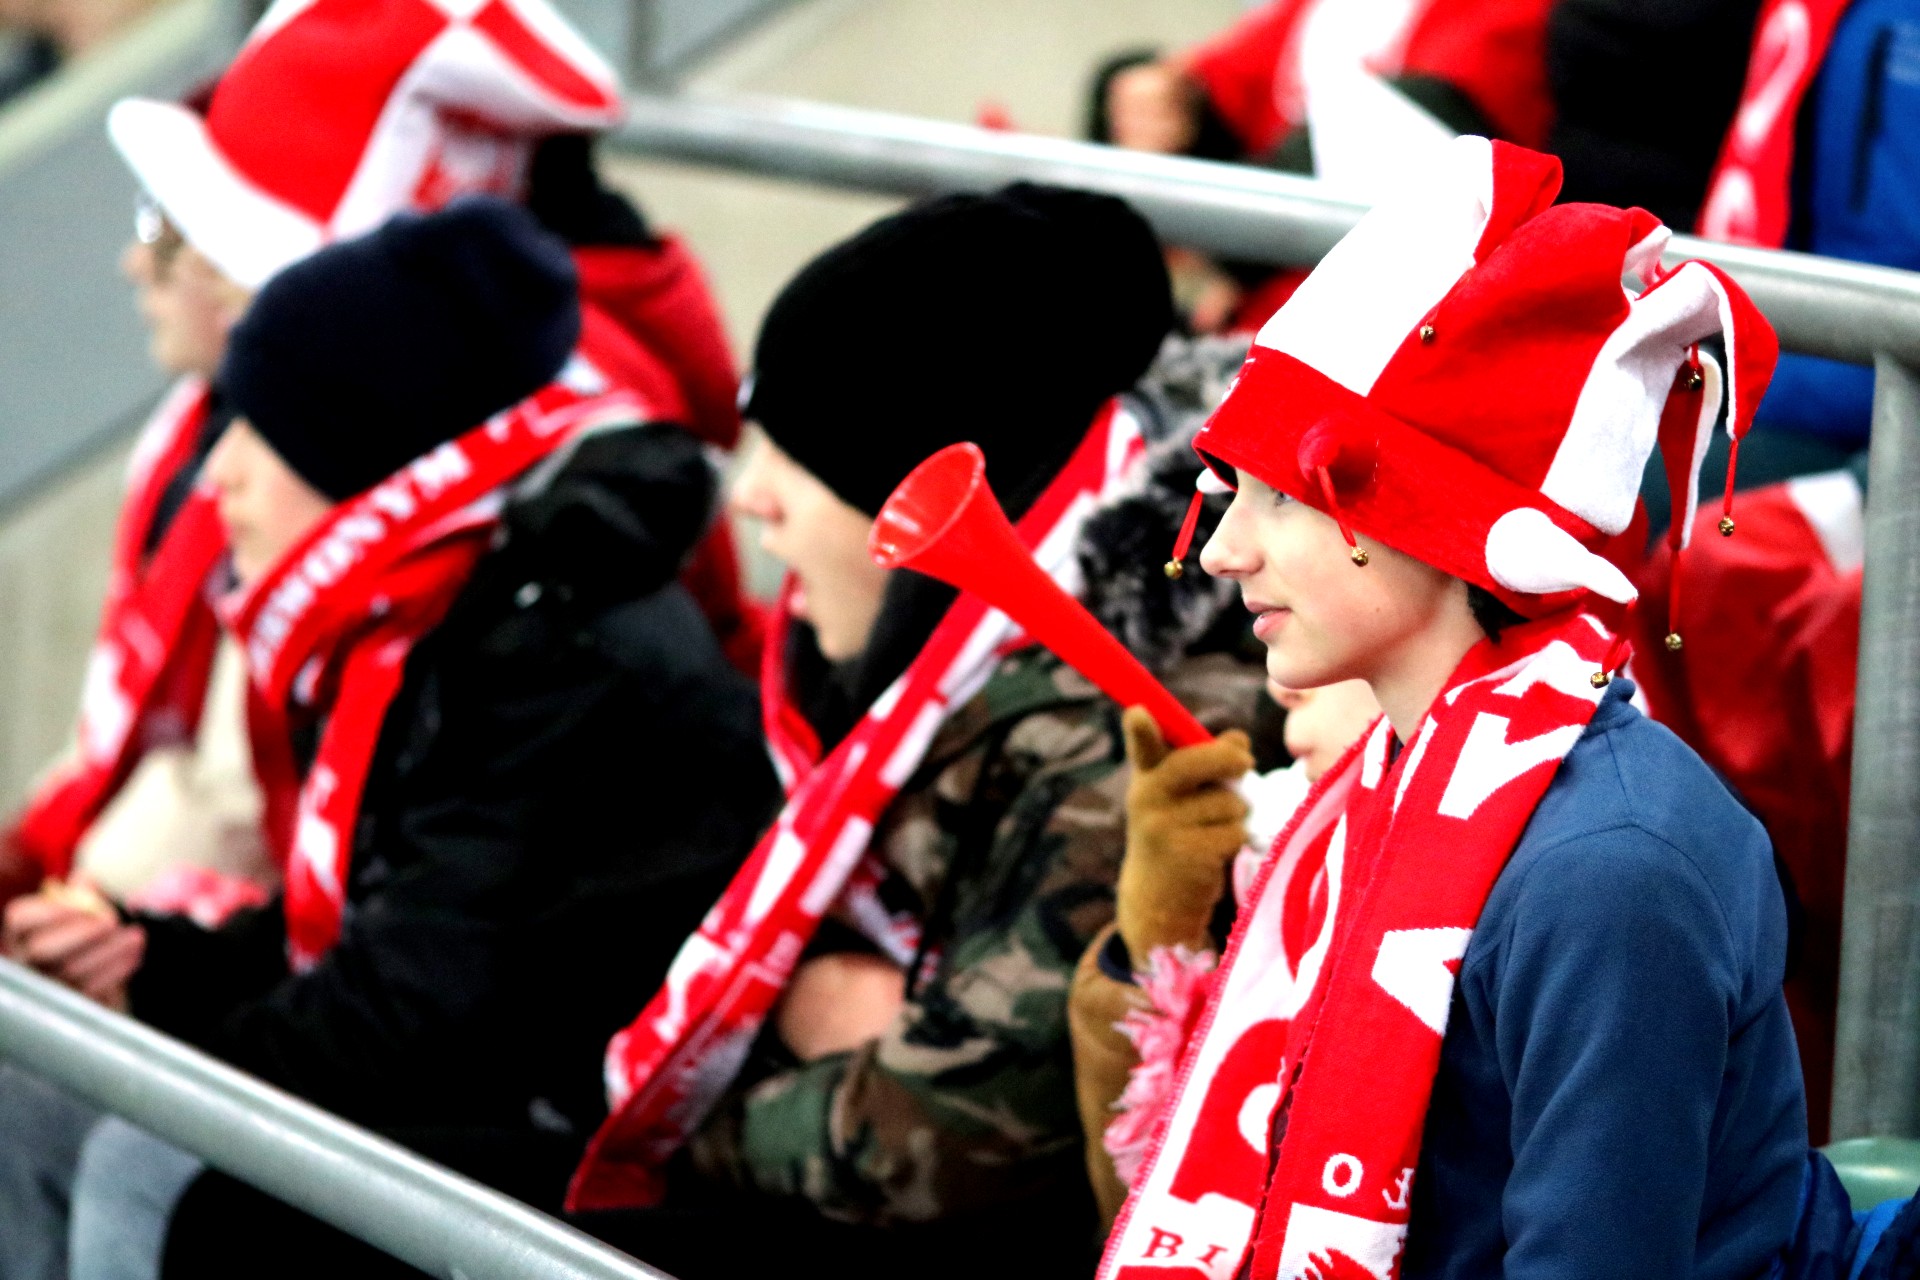 Grupa dzieci na trybunie stadionu, mają biało-czerwone czapki i szaliki, jeden chłopiec trzyma czerwoną trąbkę.